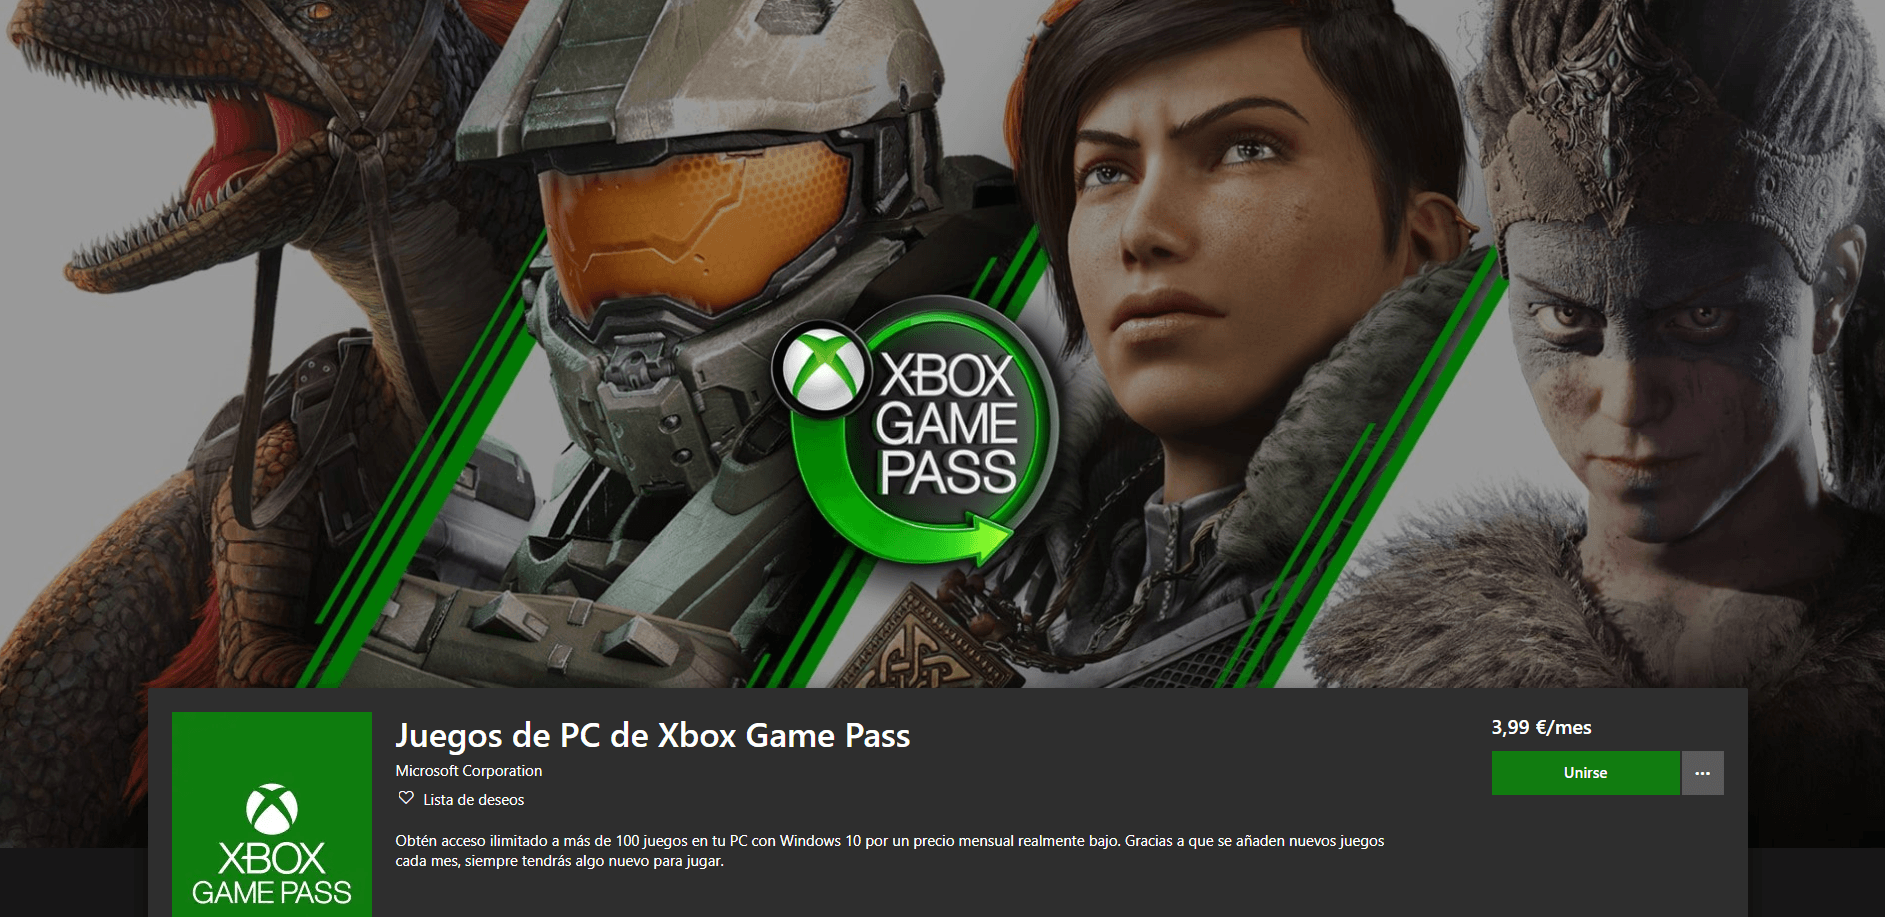 Juegos de PC de Xbox Game Pass